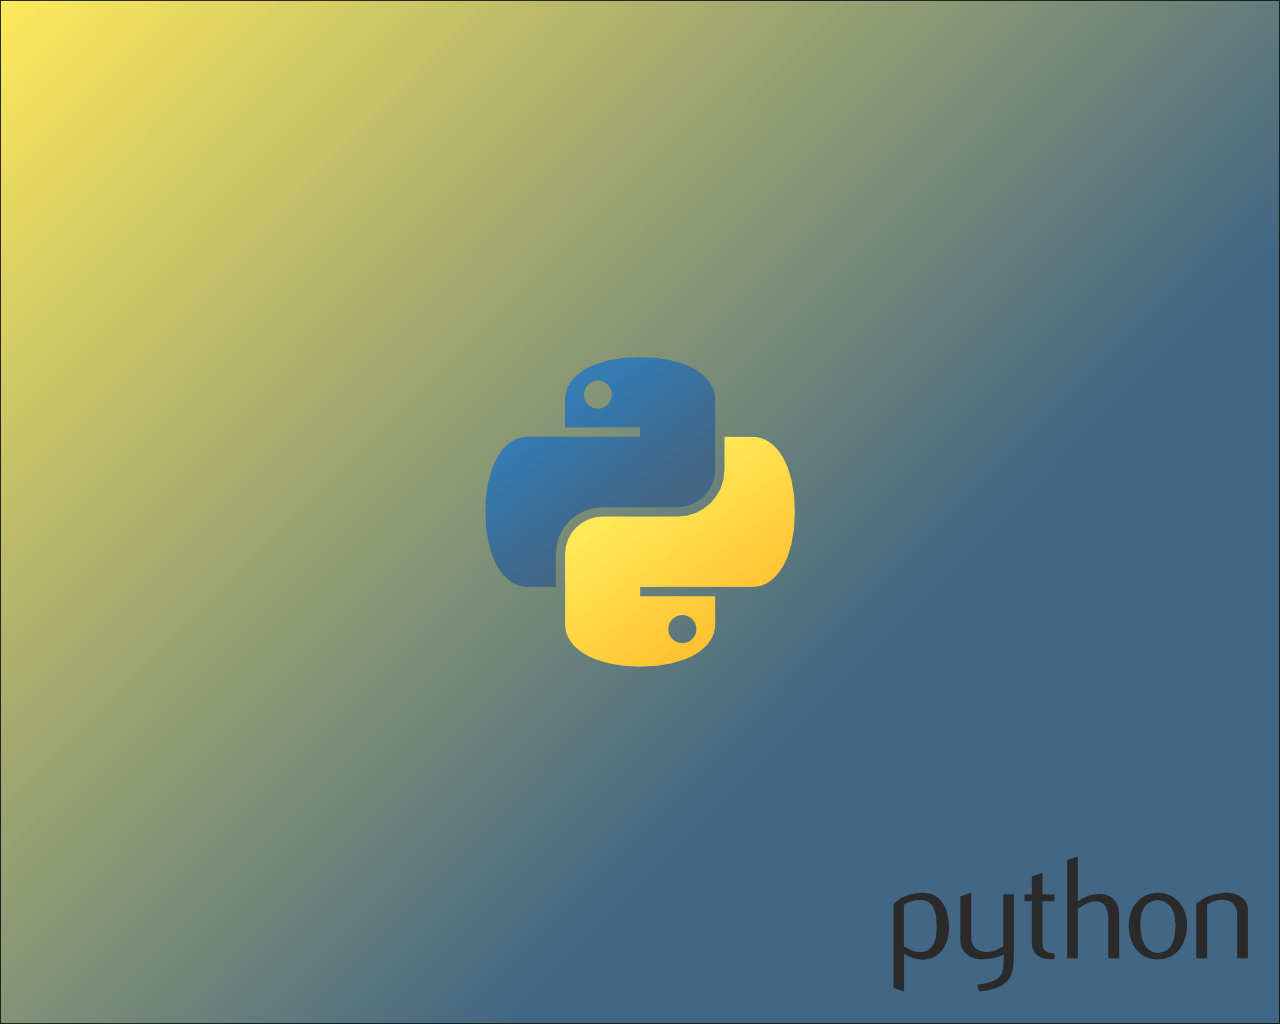 imagemagic python only creates black background windows